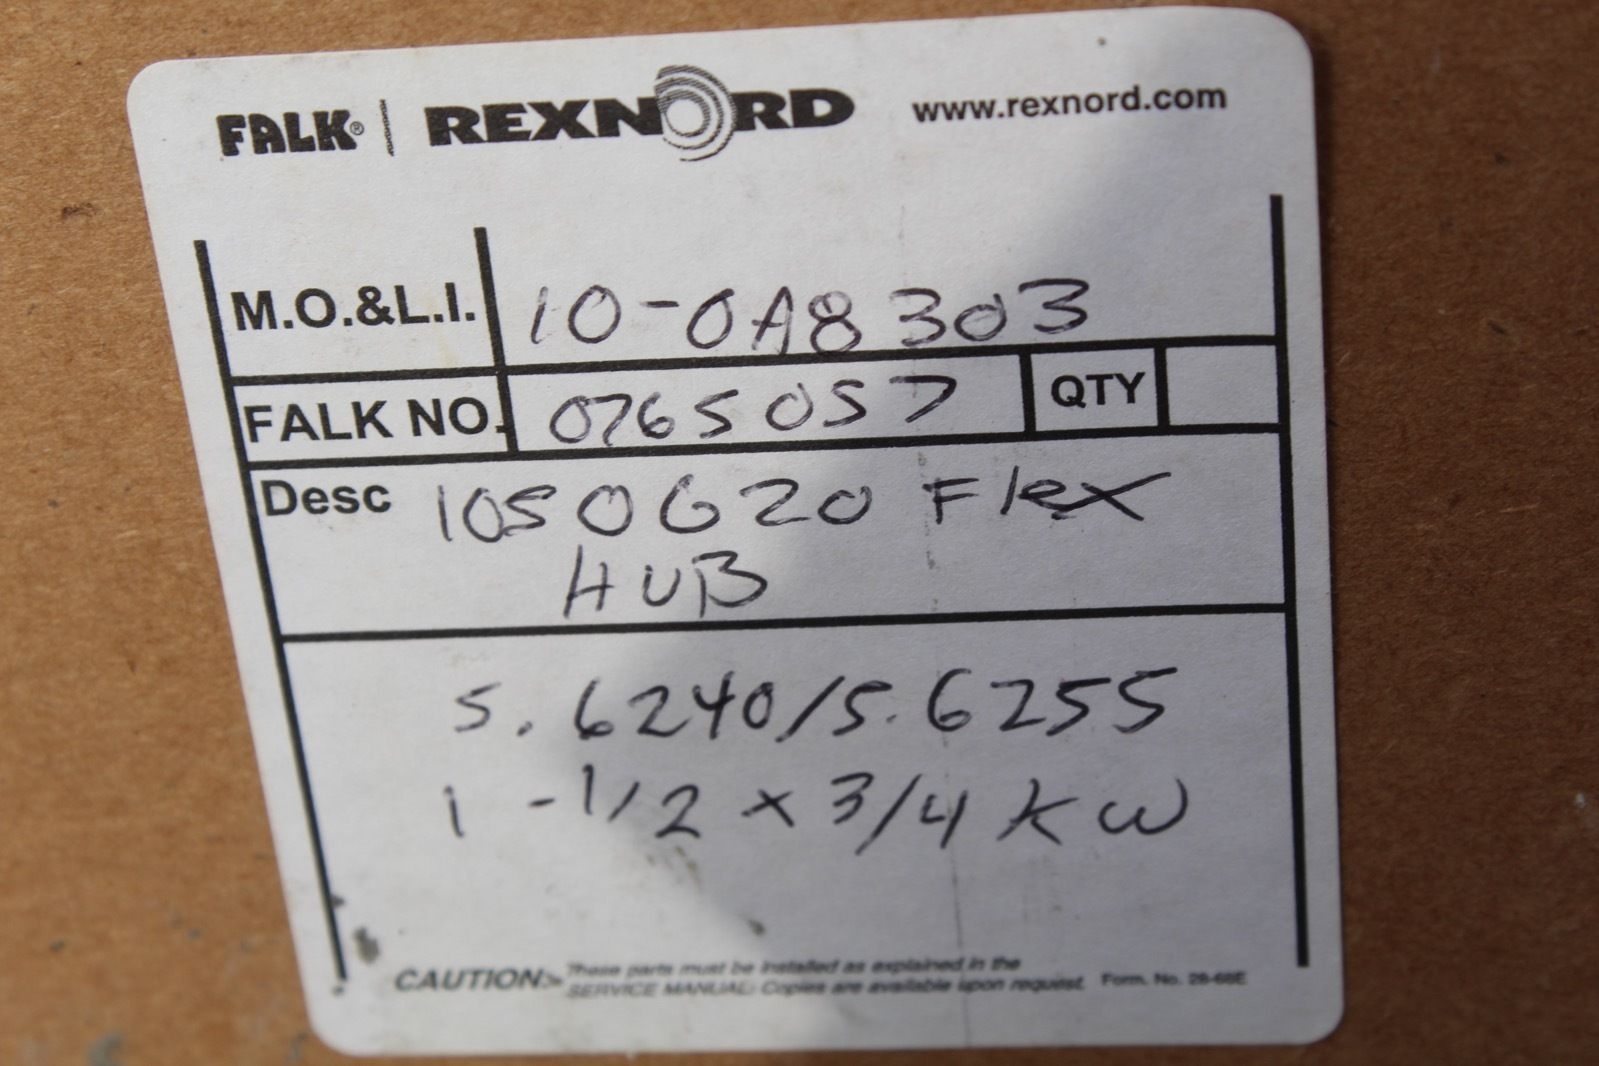 Rexnord Falk 1050620 Flex Hub 1 1/2 X 3/4 0765057 *new* (connex) 1